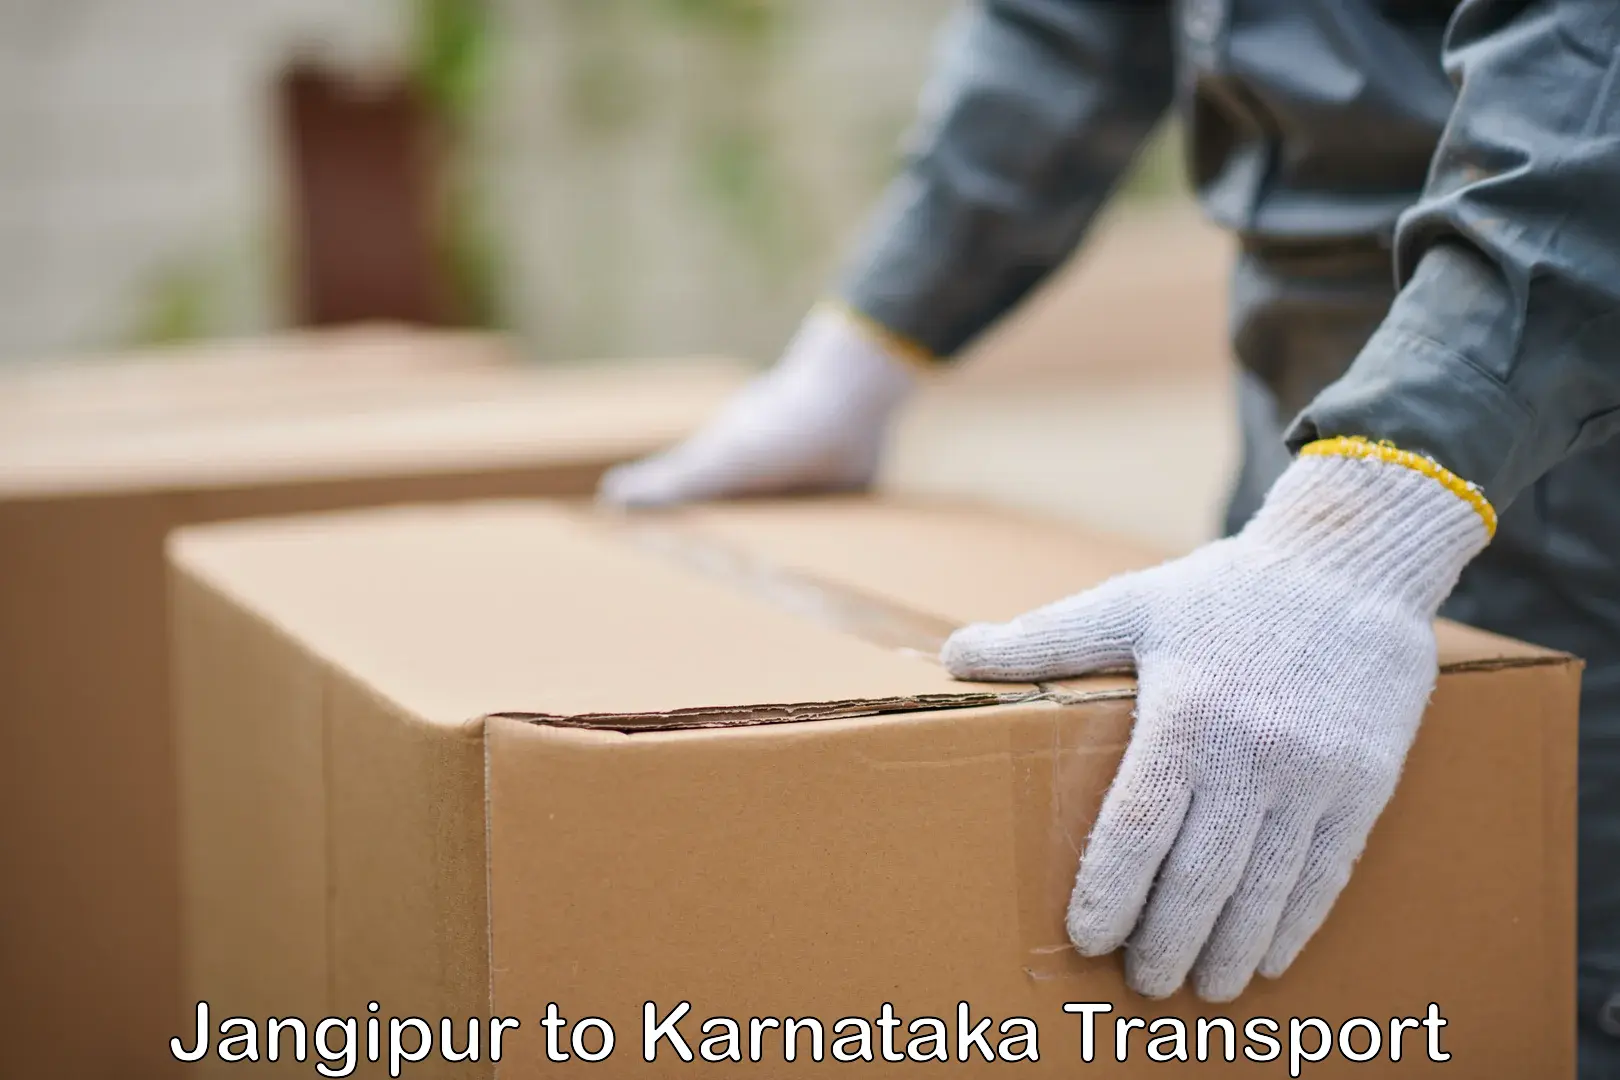 Transport in sharing Jangipur to Karnataka